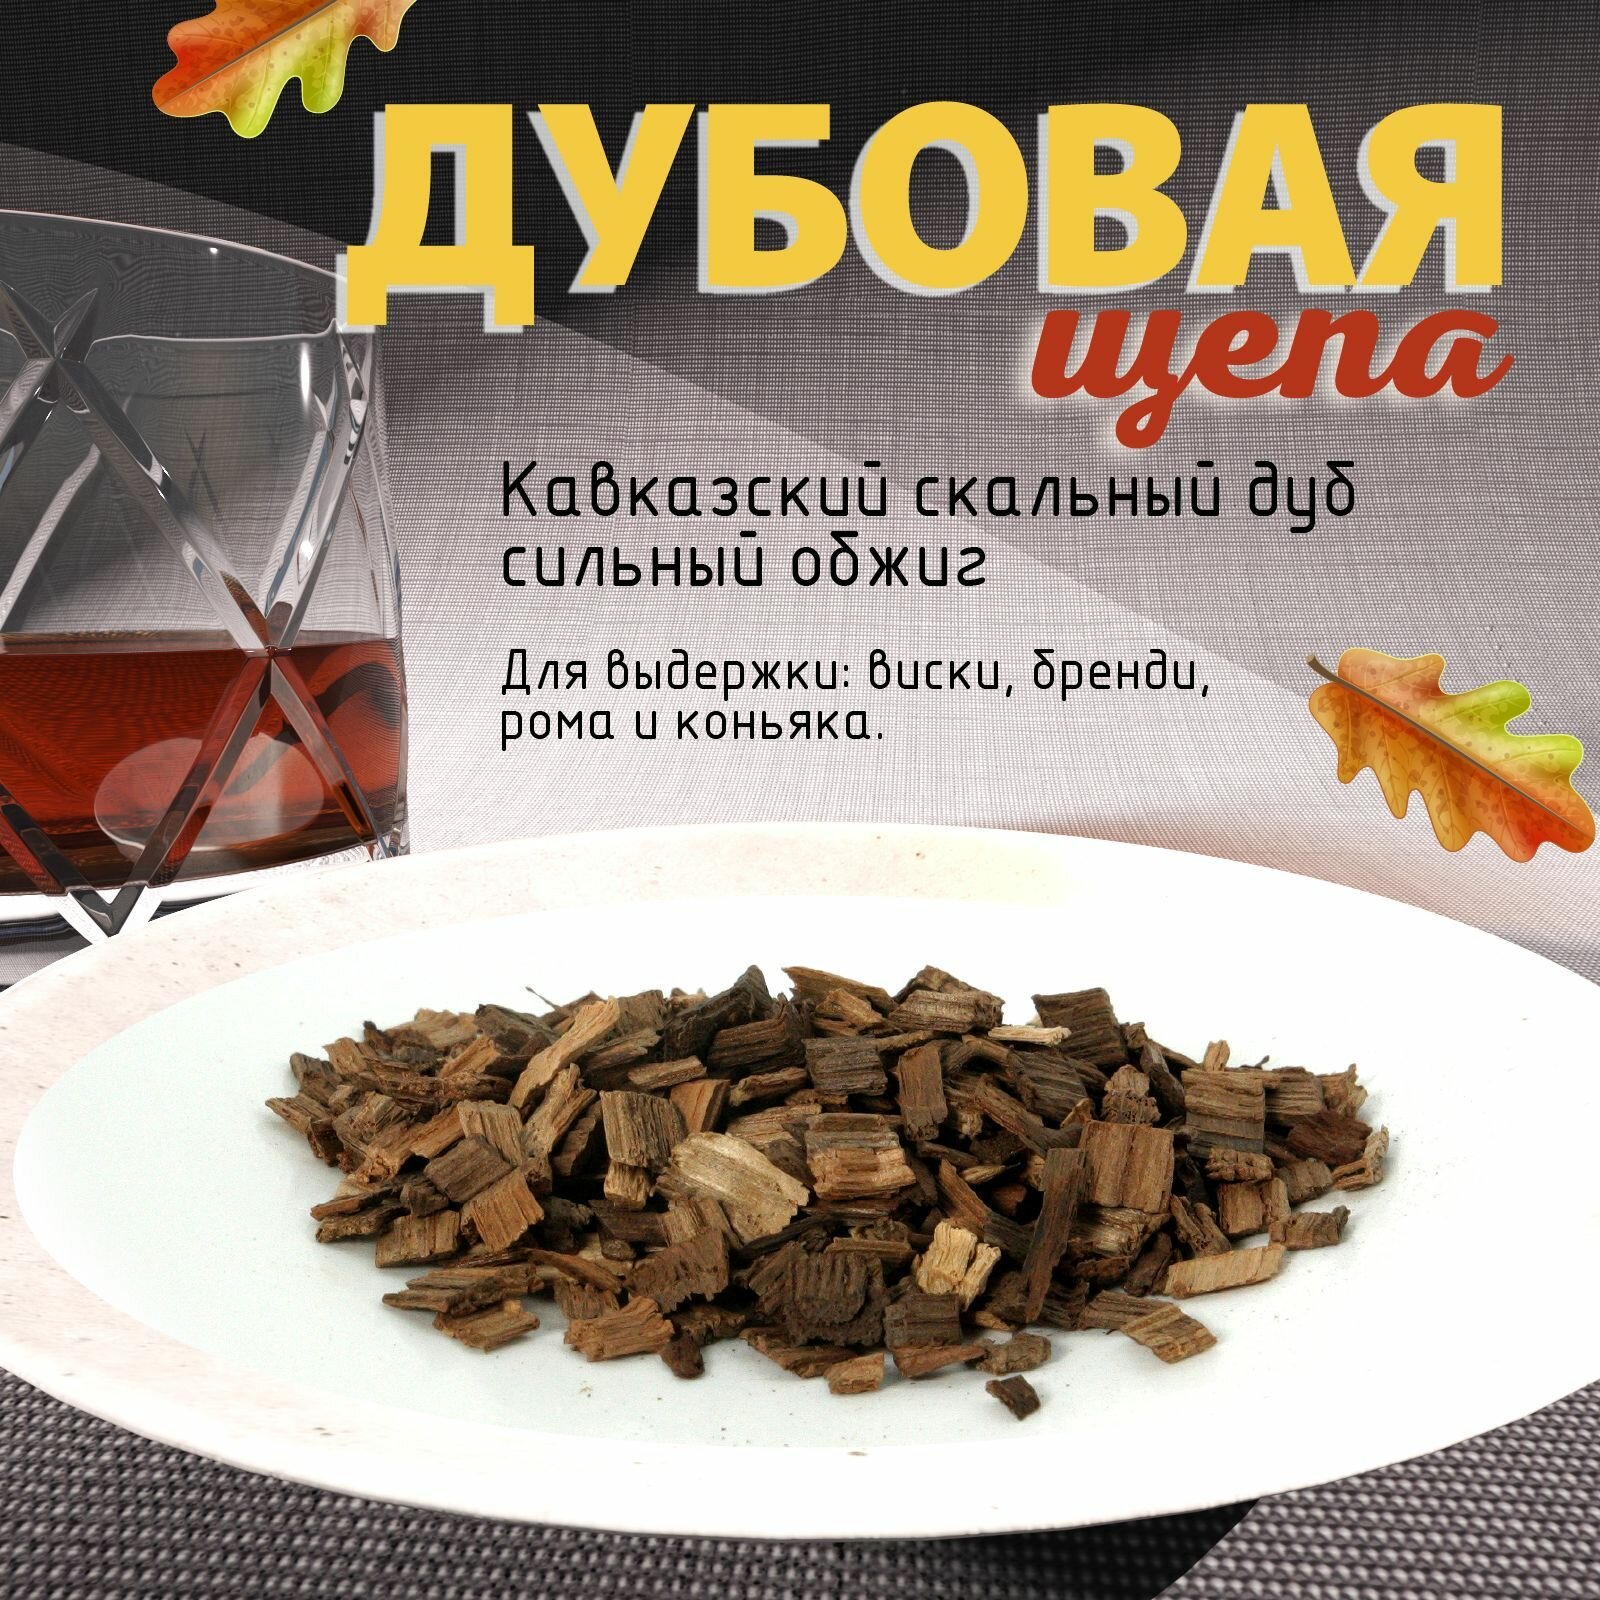 Дубовые чипсы (щепа) для настаивания самогона 300гр. алкоголя средний обжиг из Кавказского скального дуба.